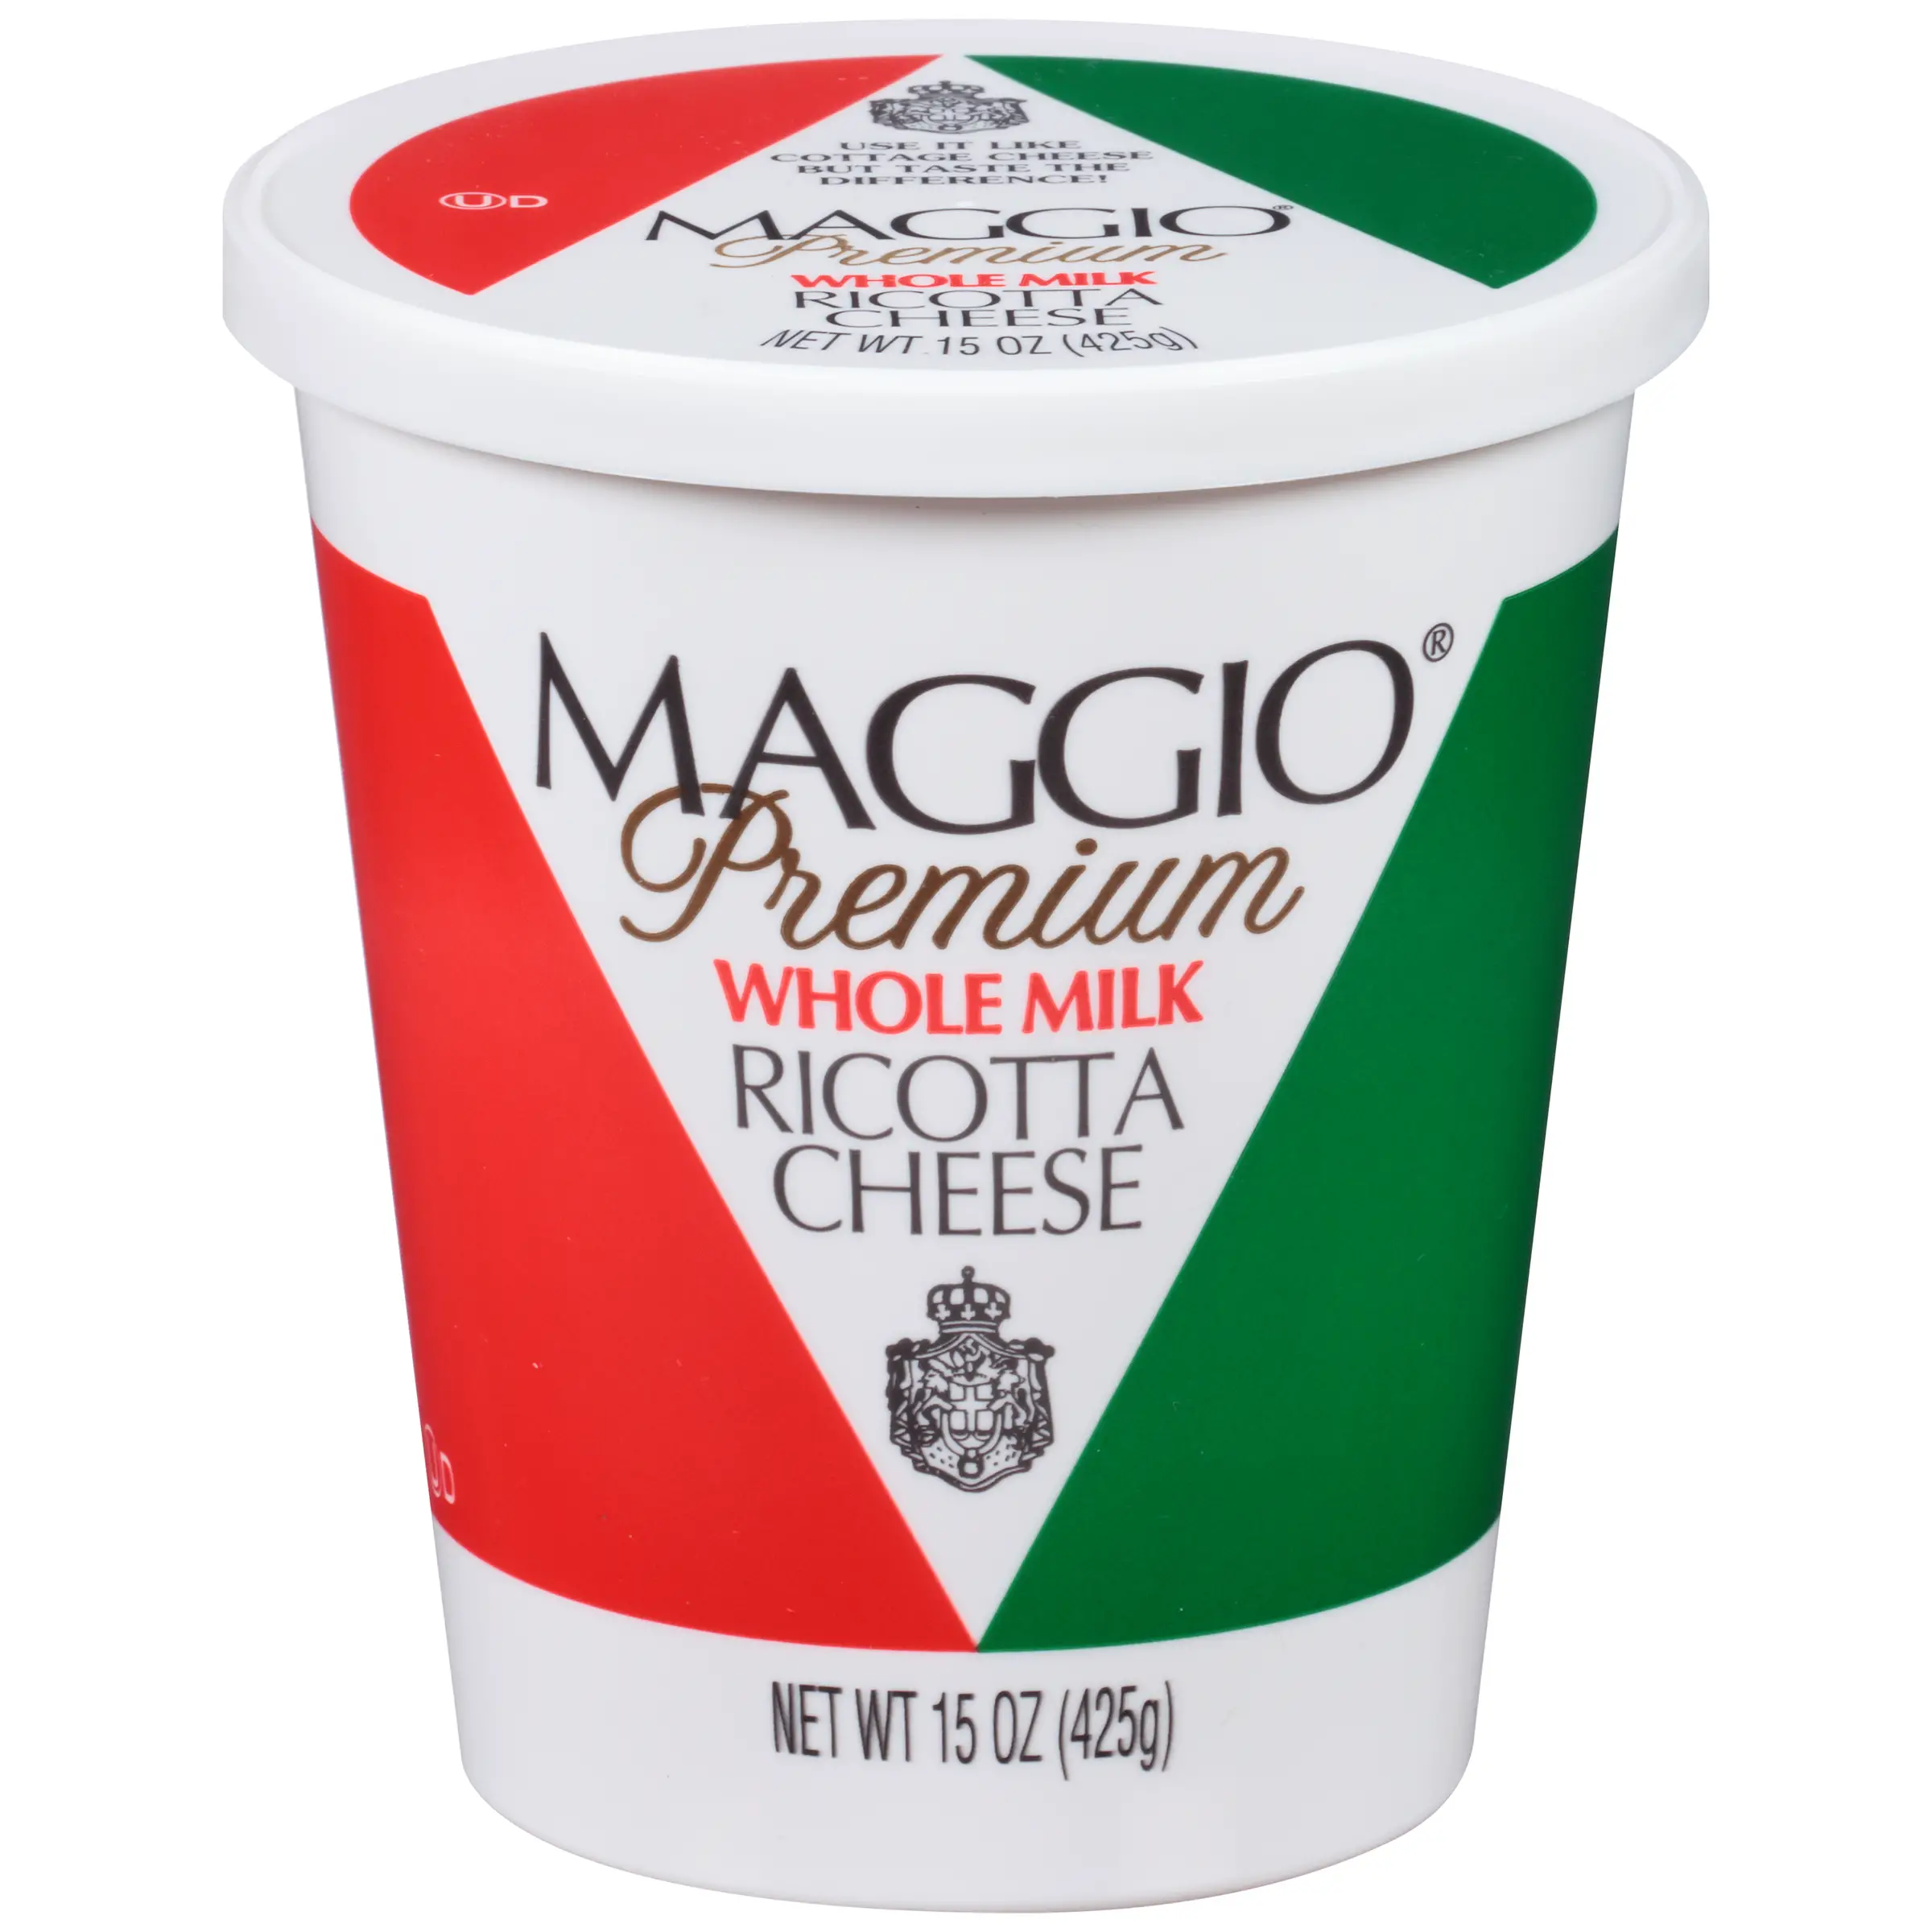 Maggio Premium Whole Milk Ricotta Cheese, 15 Oz.